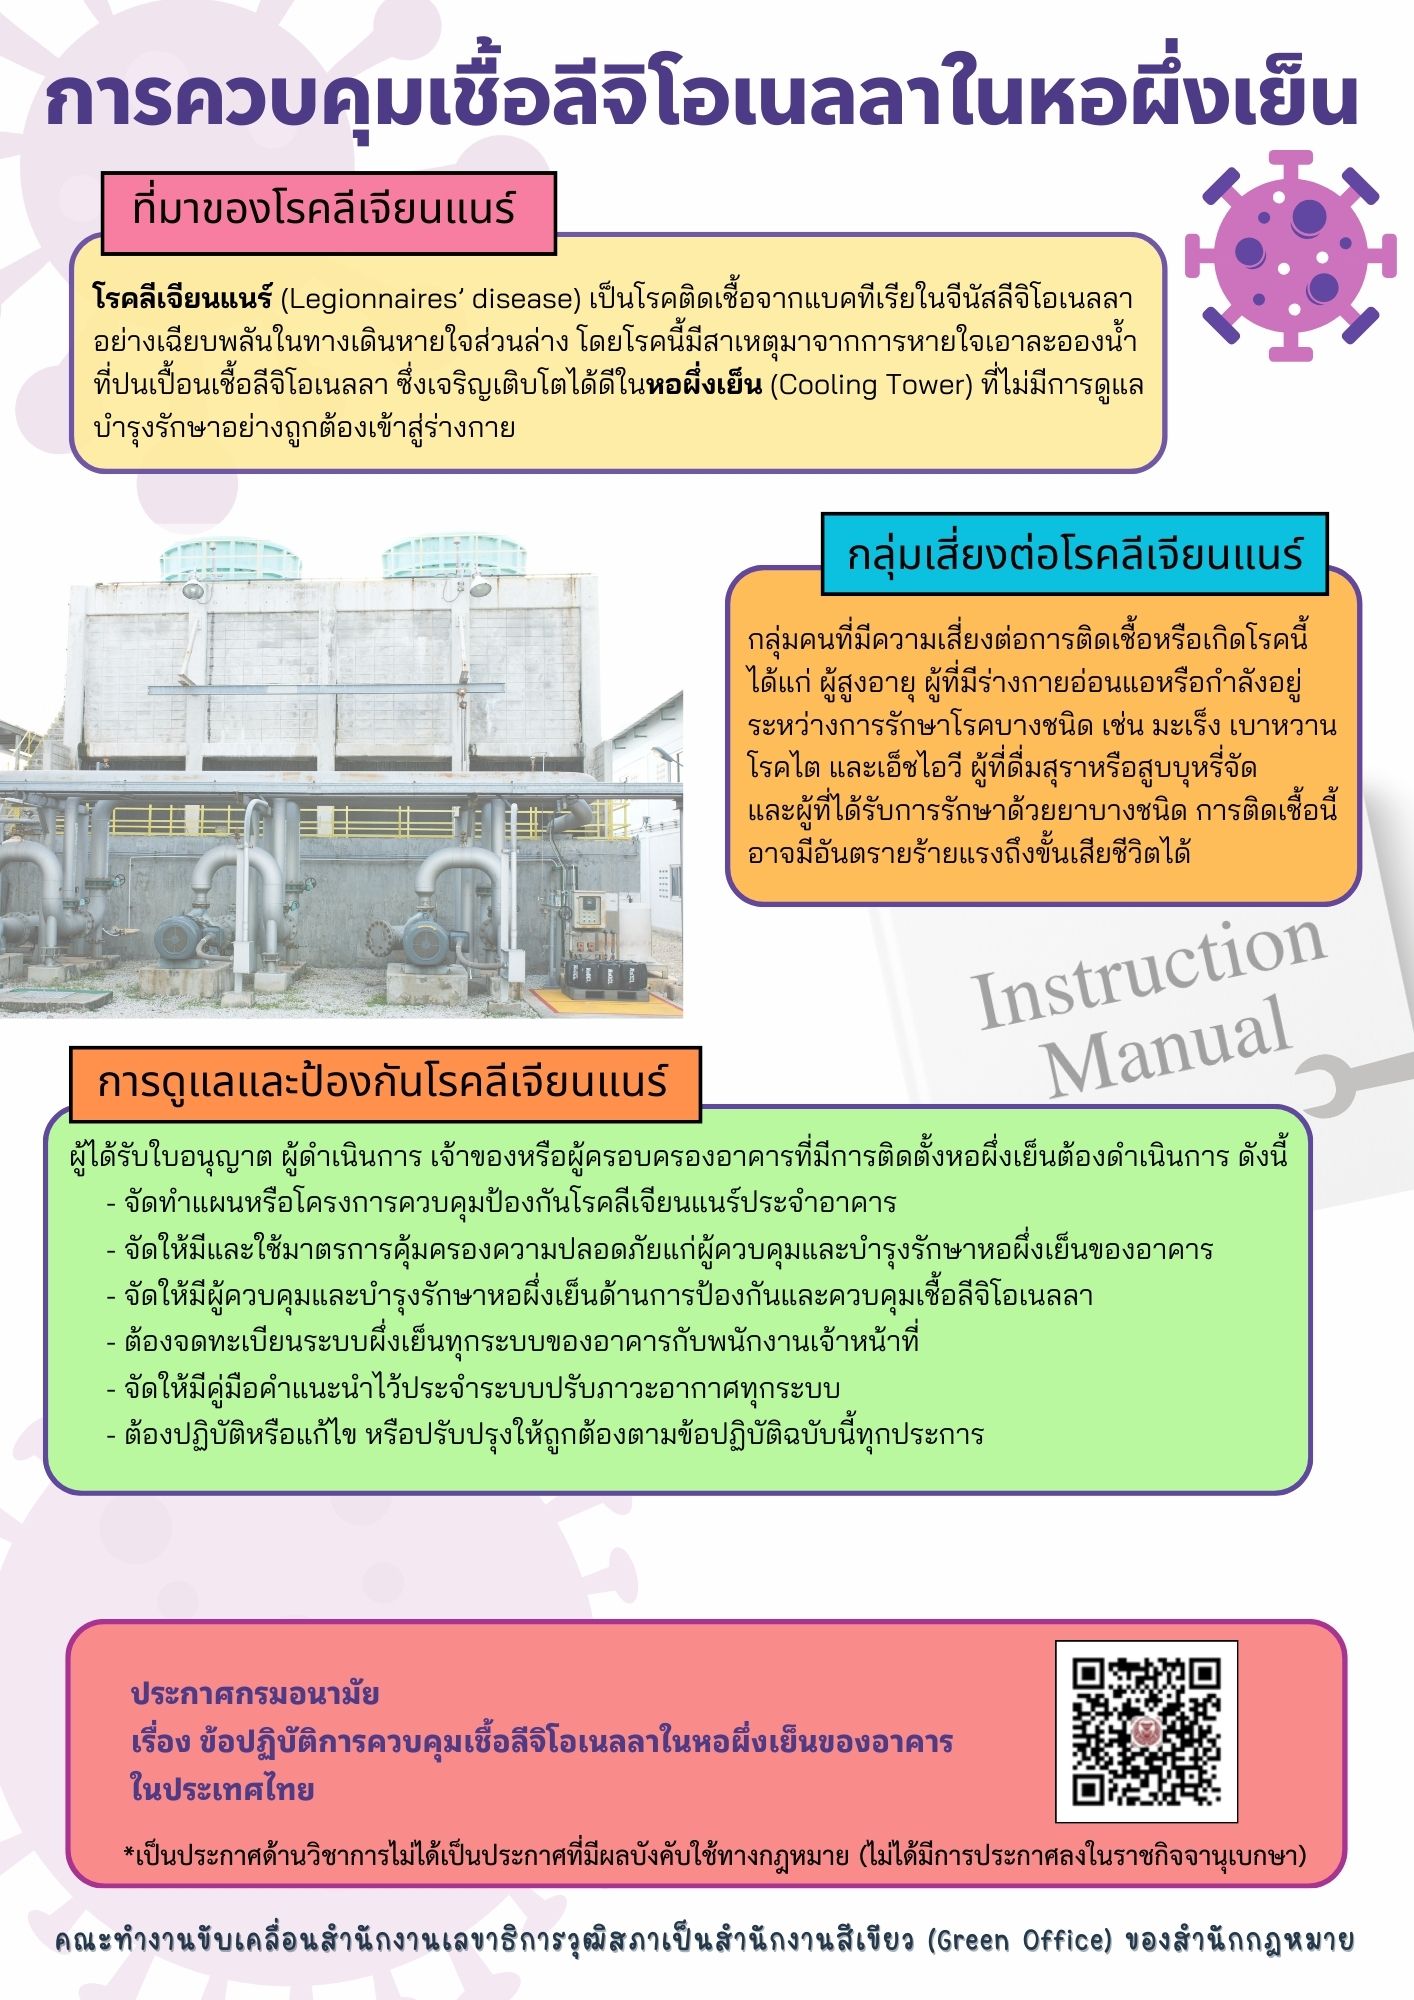 ประกาศกรมอนามัย เรื่อง ข้อปฏิบัติการควบคุมเชื้อลีจิโอเนลลาในหอผึ่งเย็นของอาคารในประเทศไทย